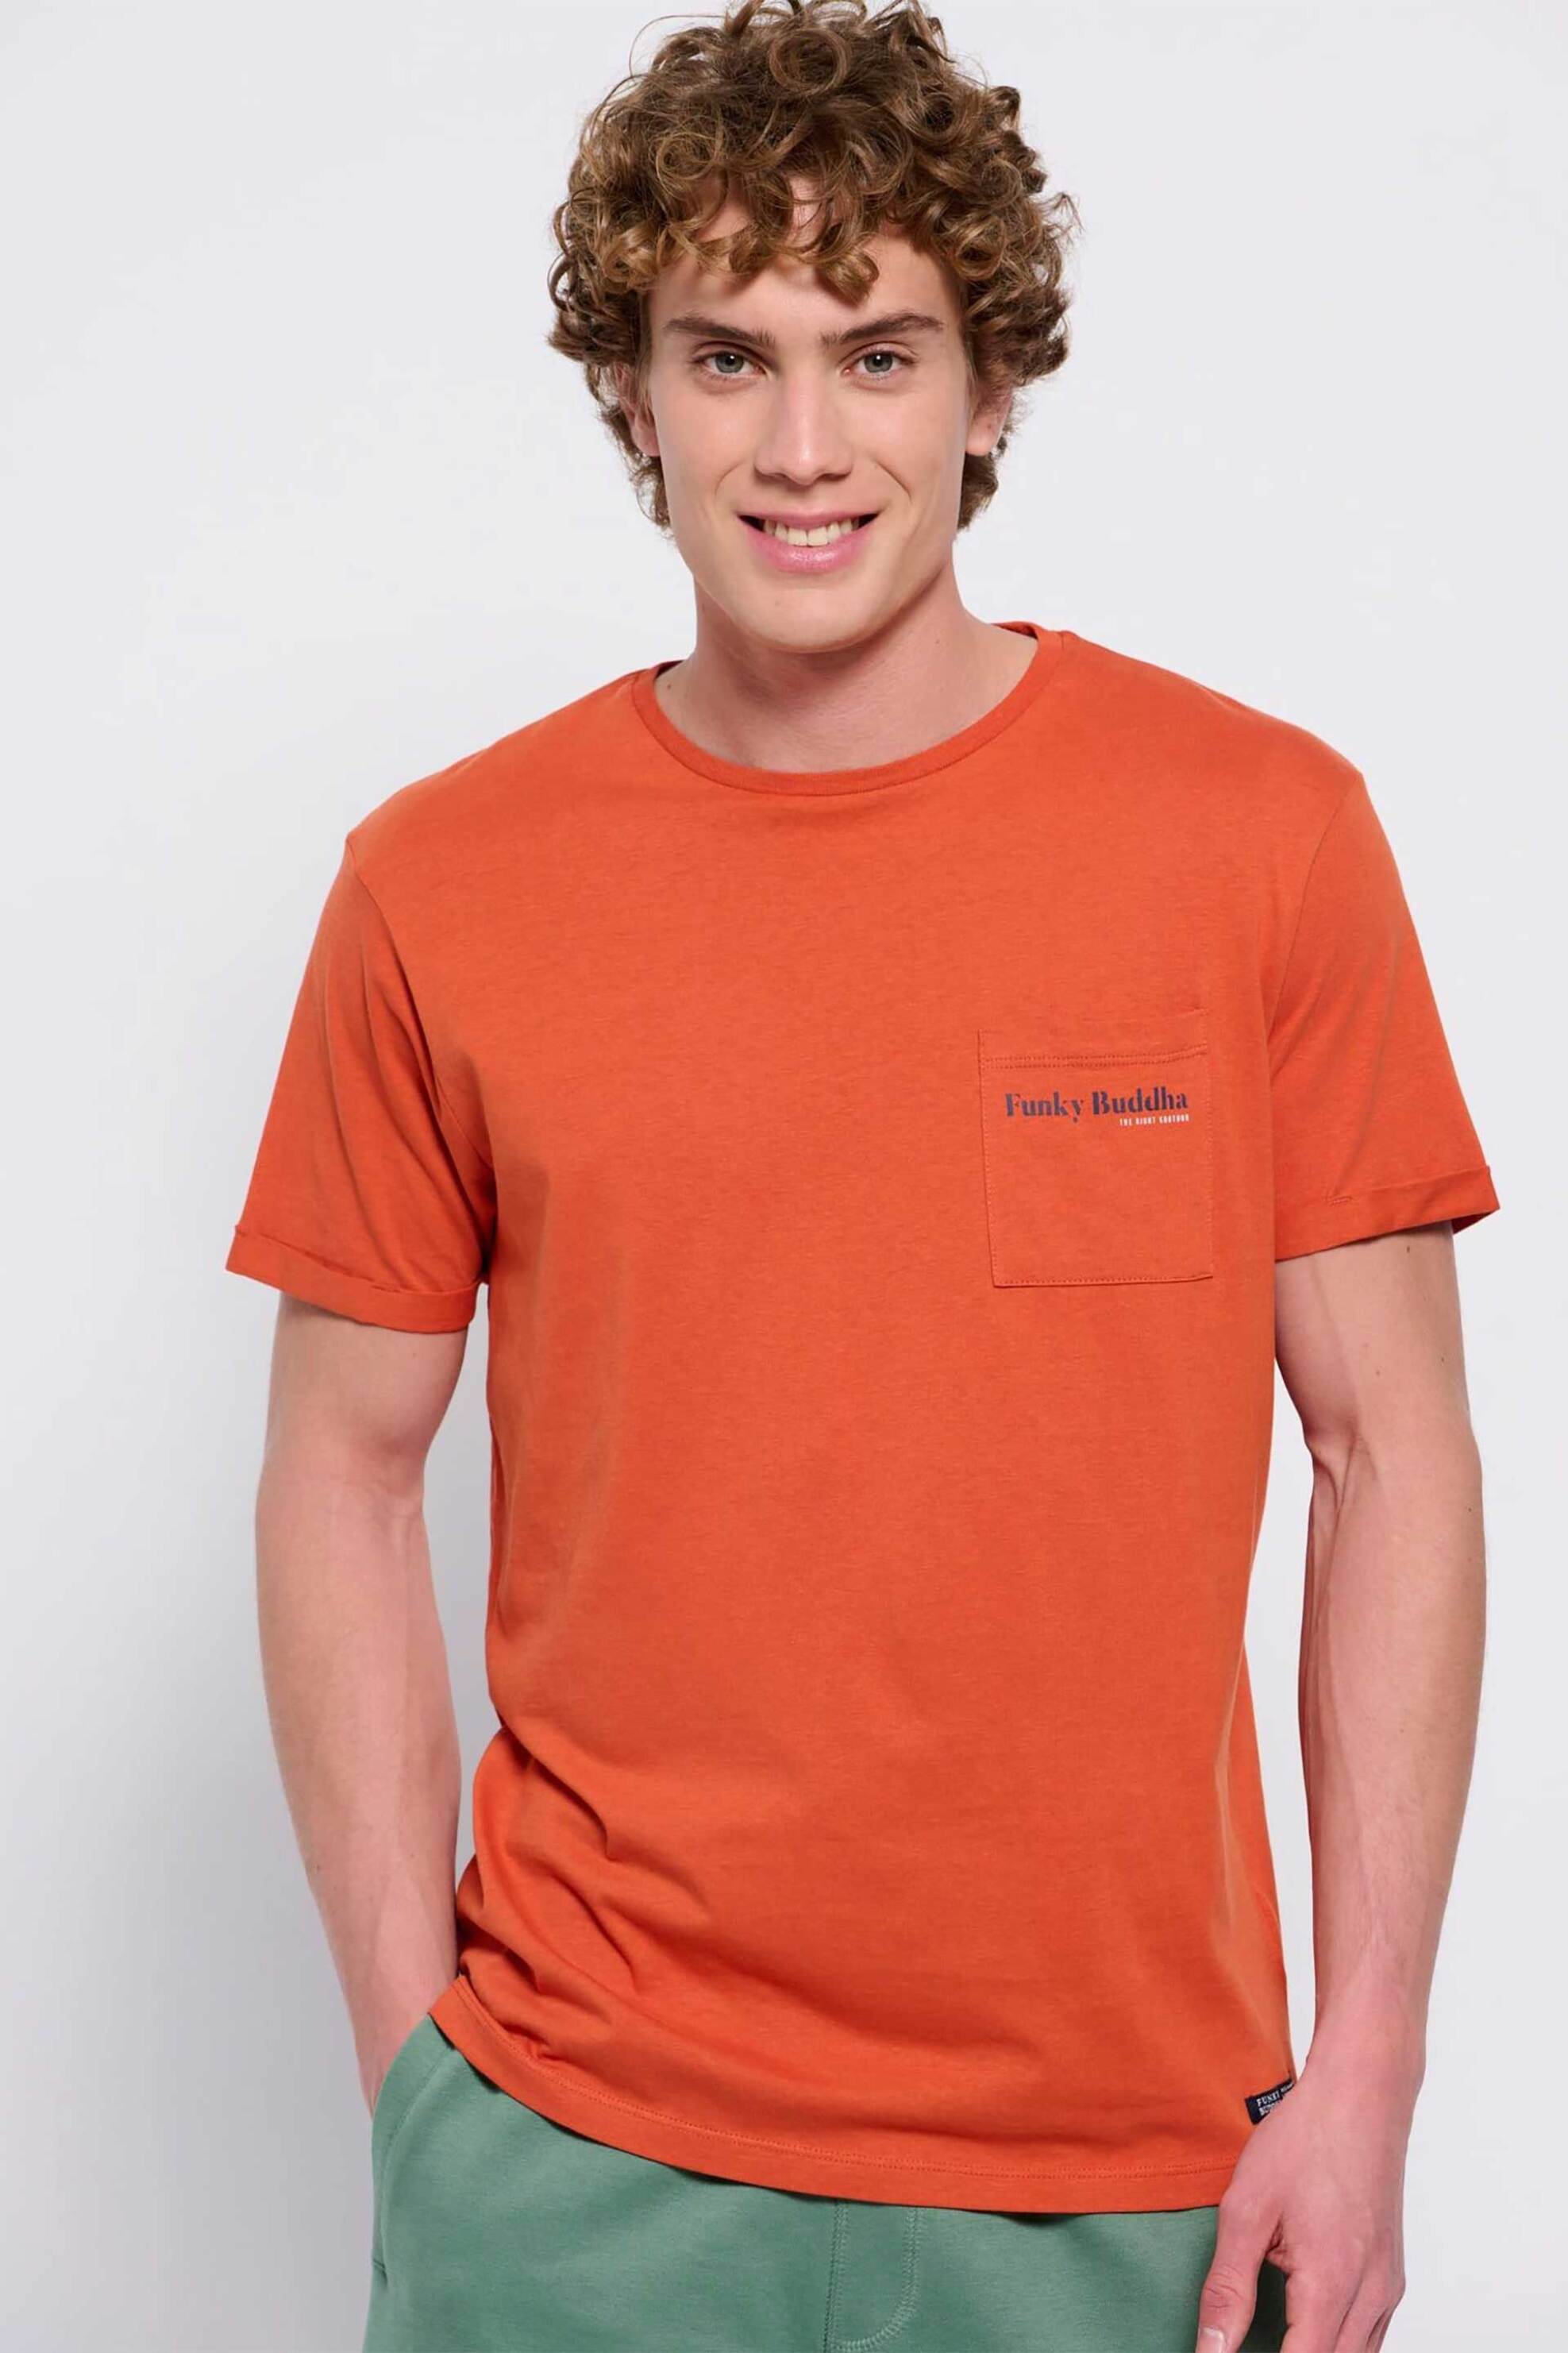 Ανδρική Μόδα > Ανδρικά Ρούχα > Ανδρικές Μπλούζες > Ανδρικά T-Shirts Funky Buddha ανδρικό βαμβακερό T-shirt μονόχρωμο με τσέπη slip και contrast logo print - FBM007-011-04 Πορτοκαλί